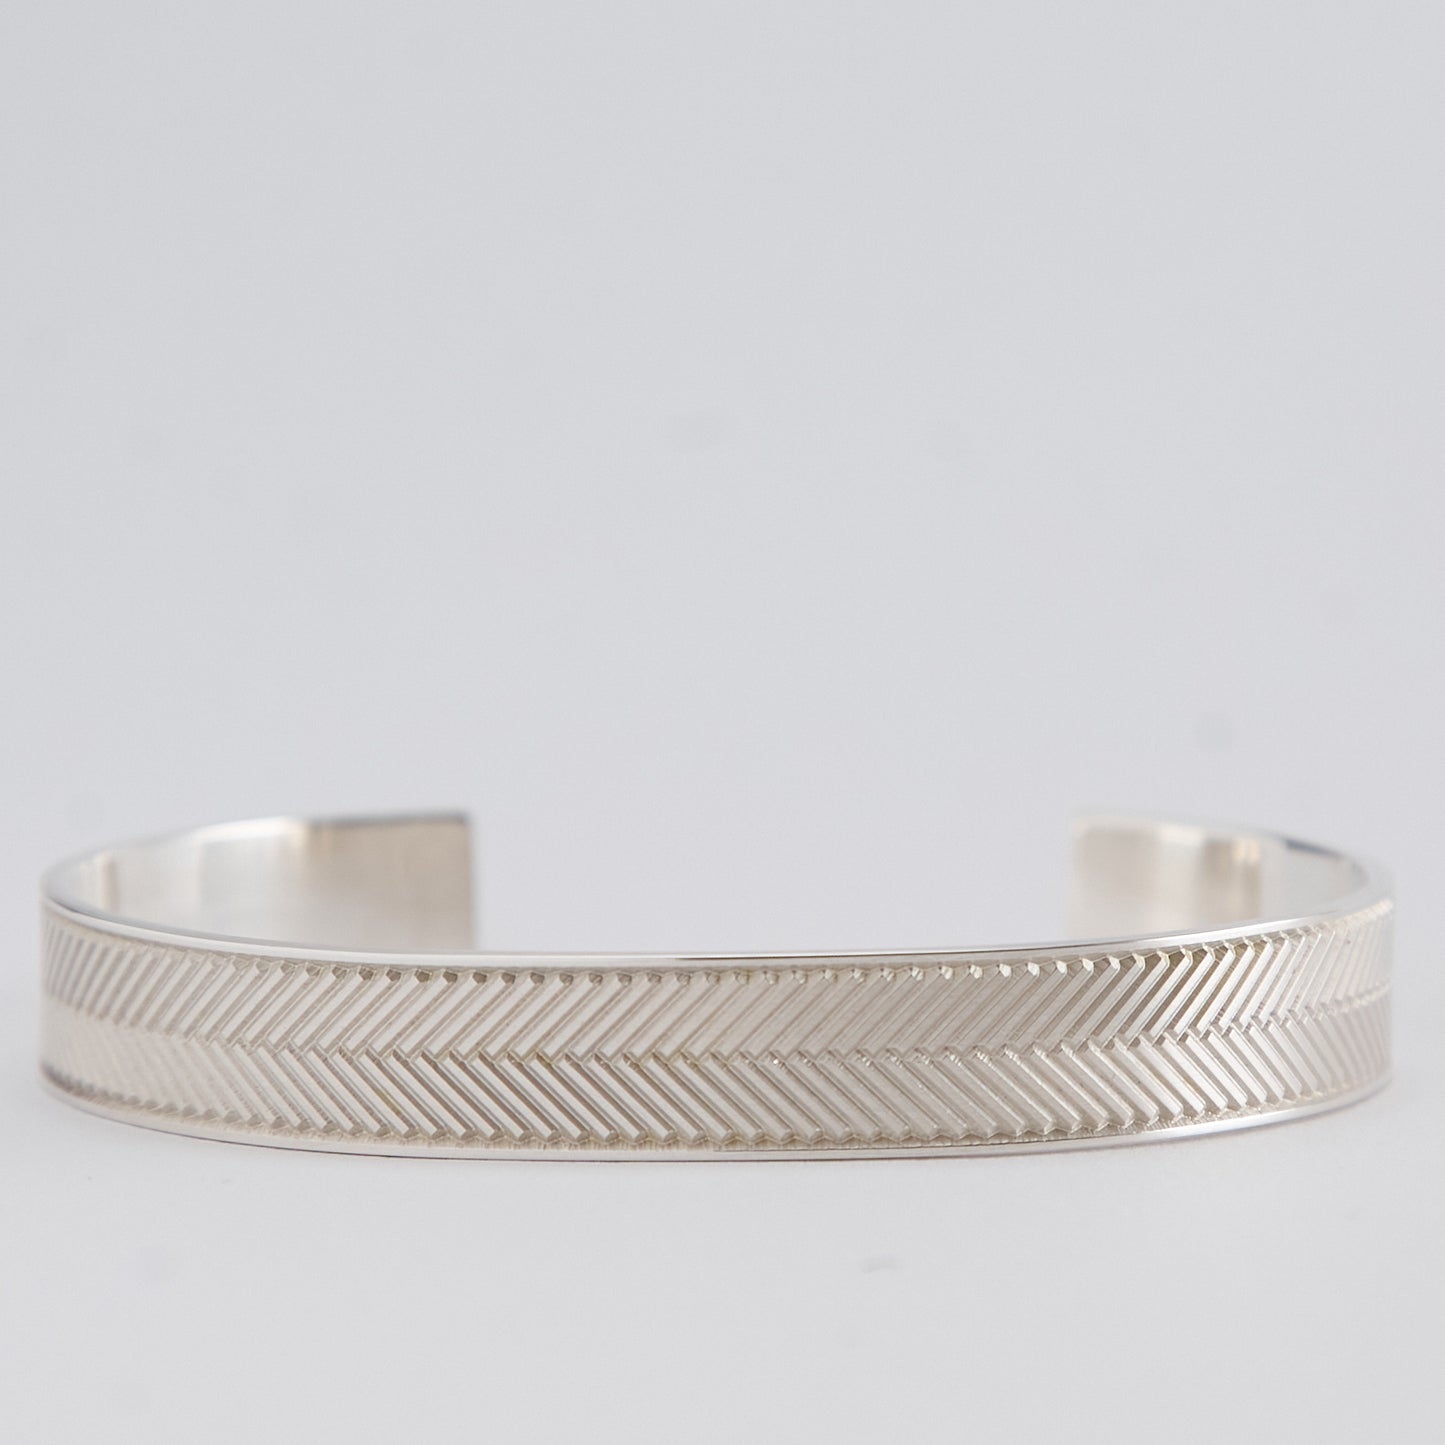 Silver Bracelet with Herringbone Engraving - Narrow